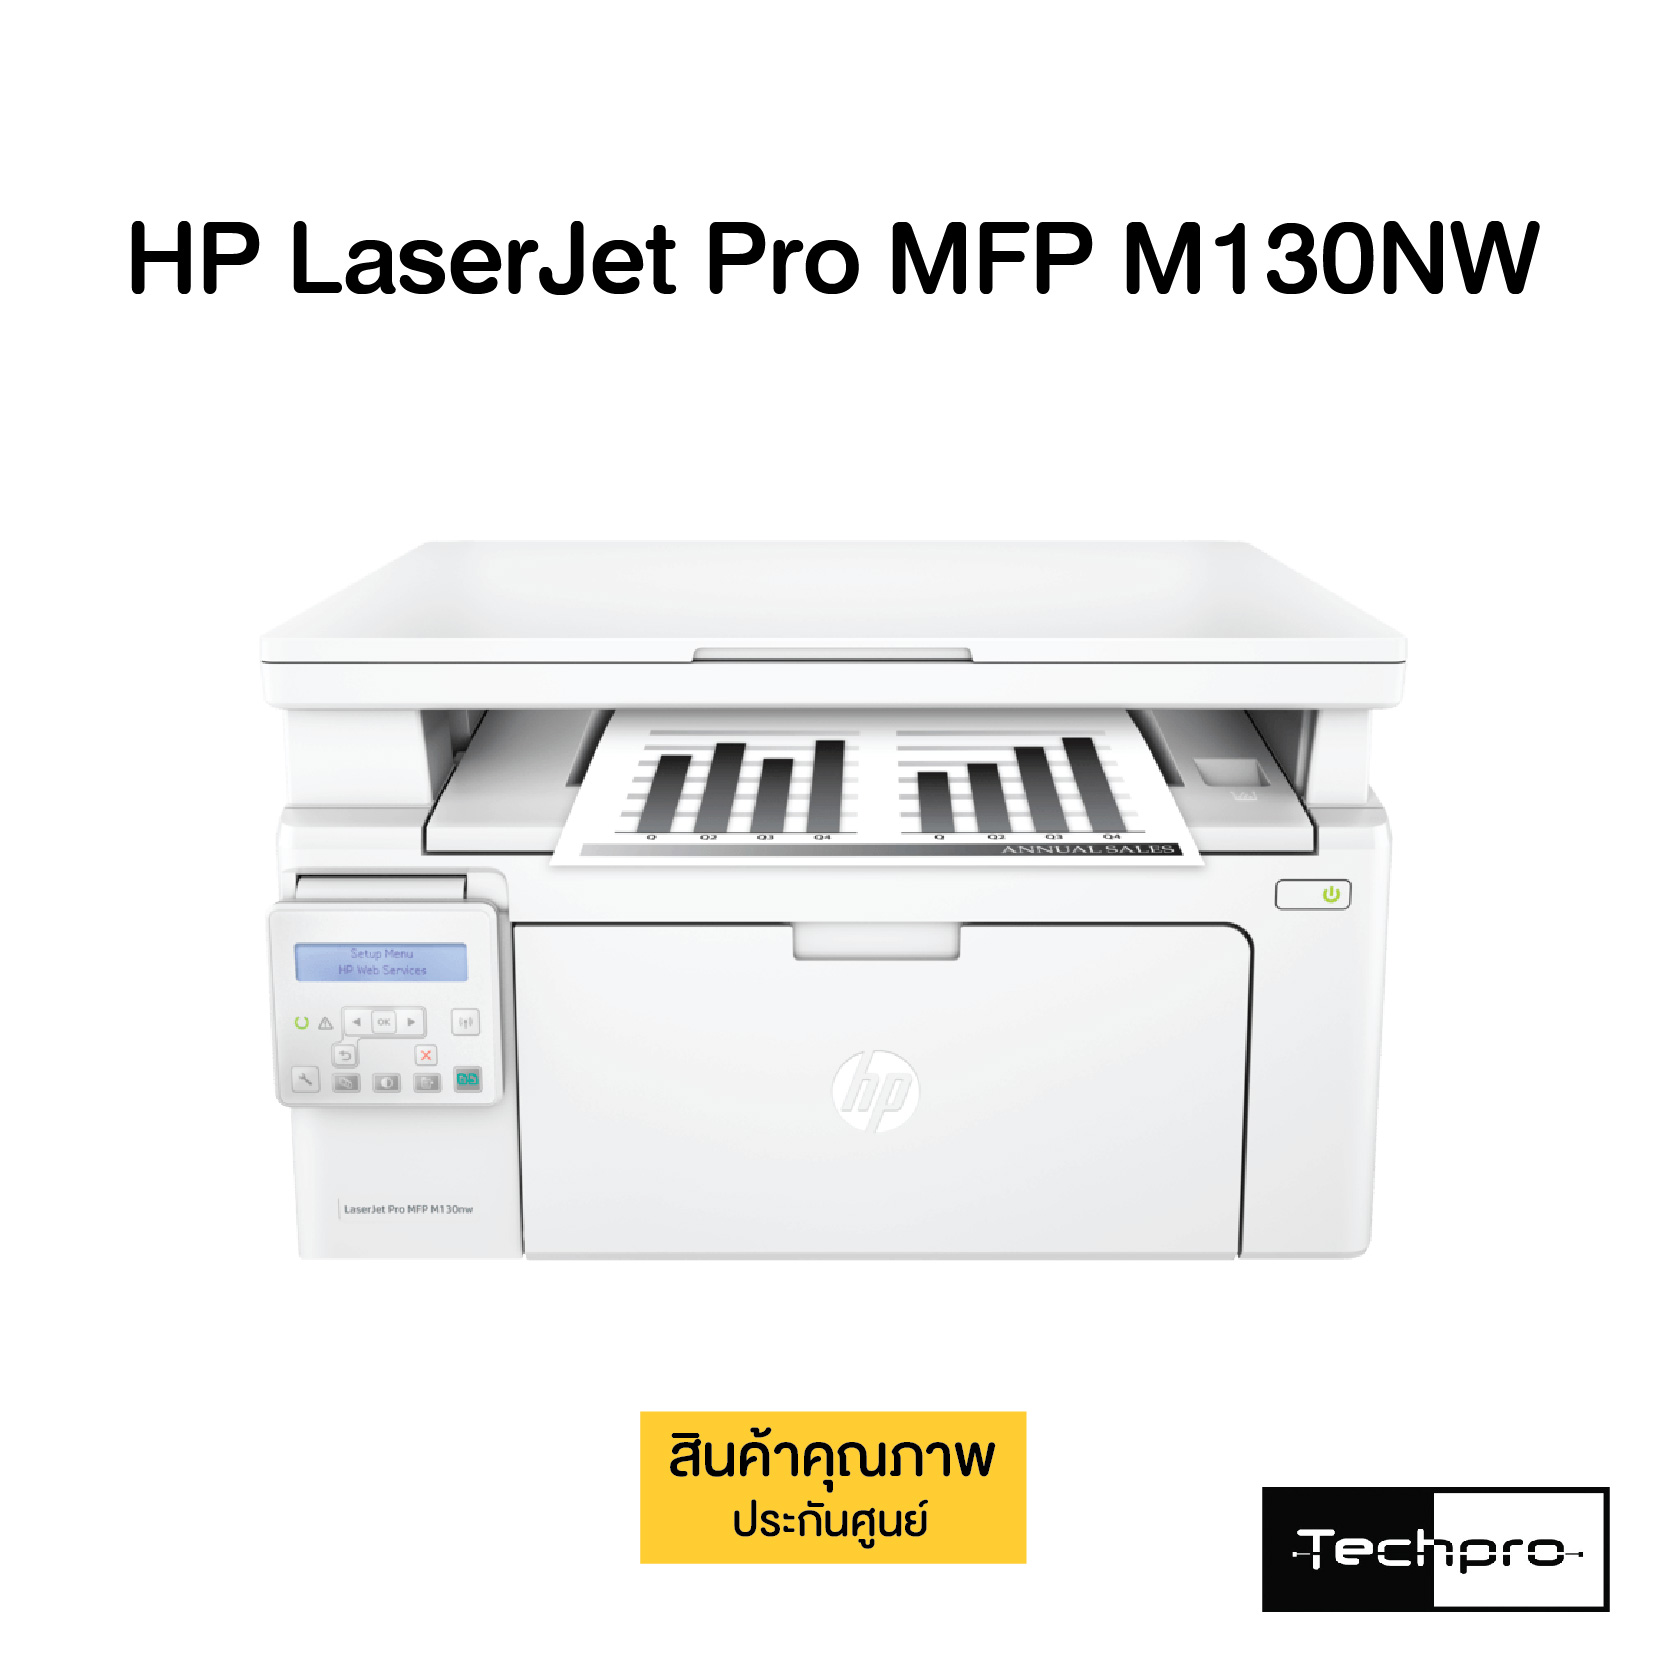 HP LaserJet Pro MFP M130NW - Techpro